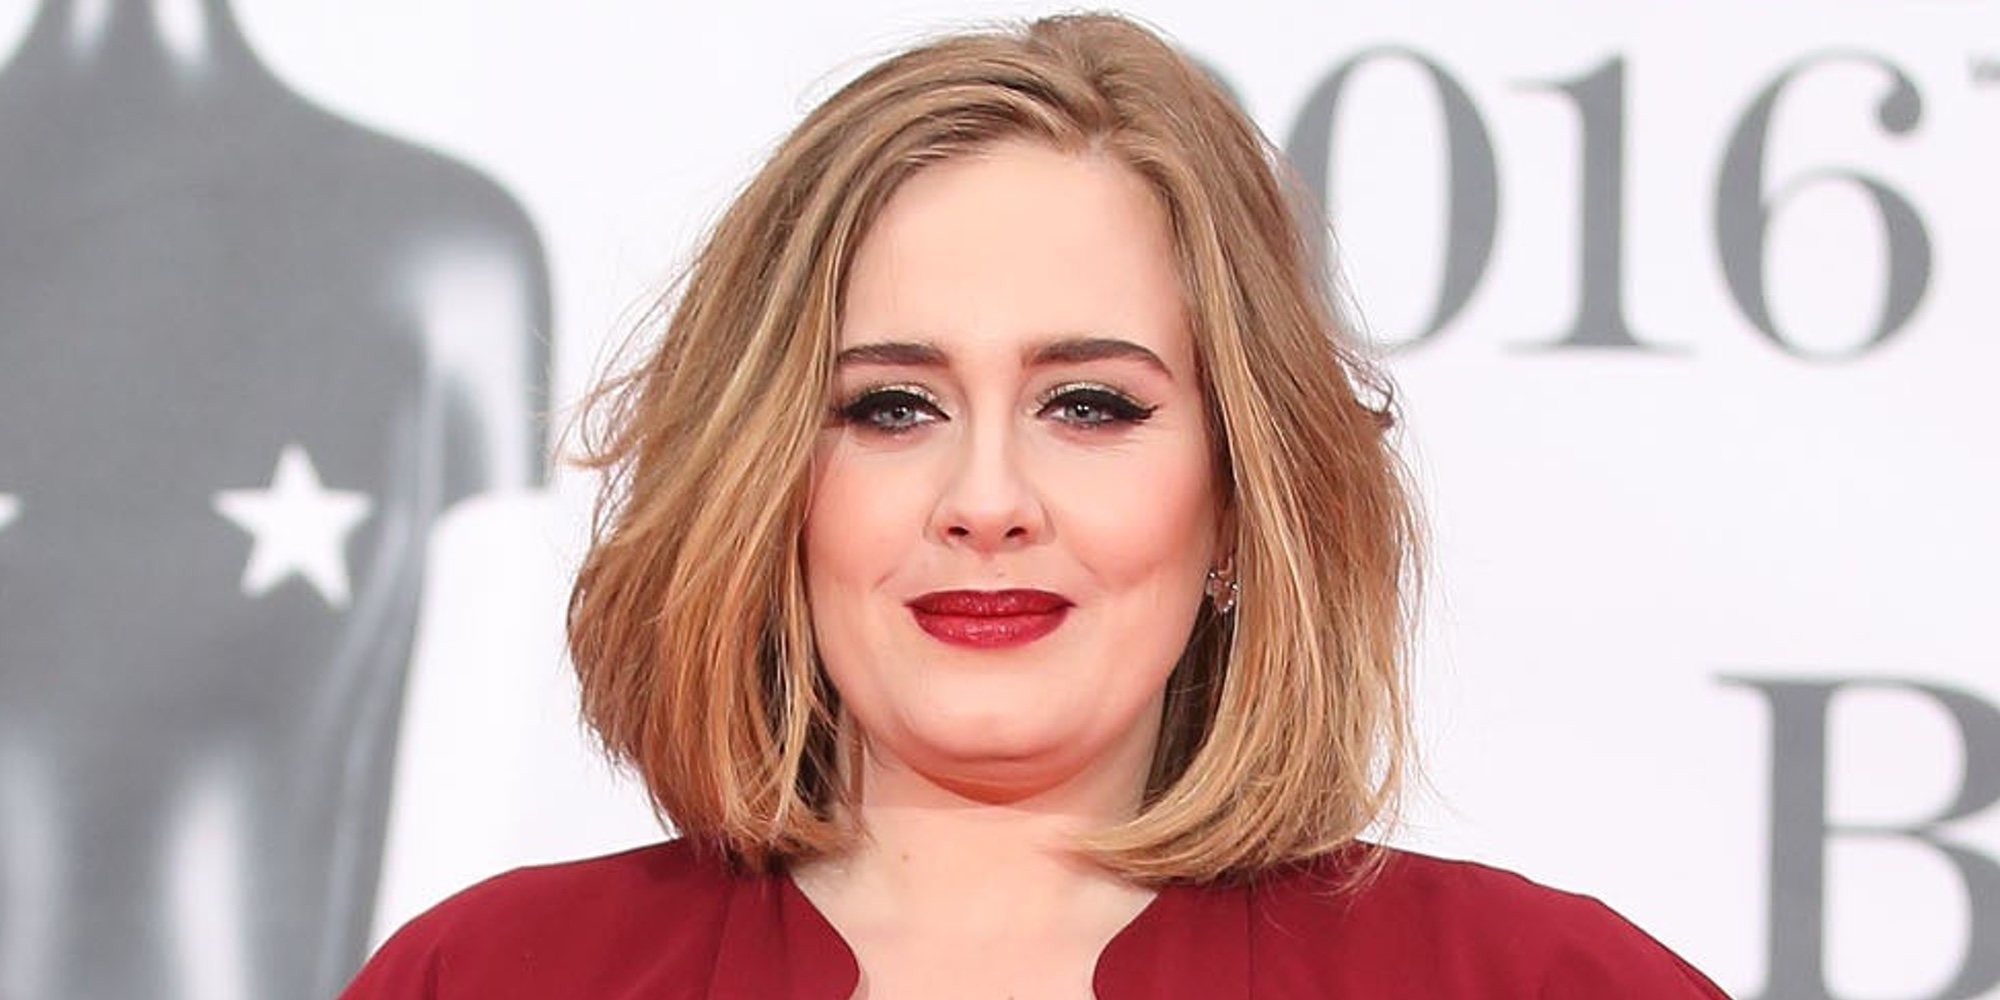 La dieta milagro que ha hecho perder 40 kilos a Adele en seis meses